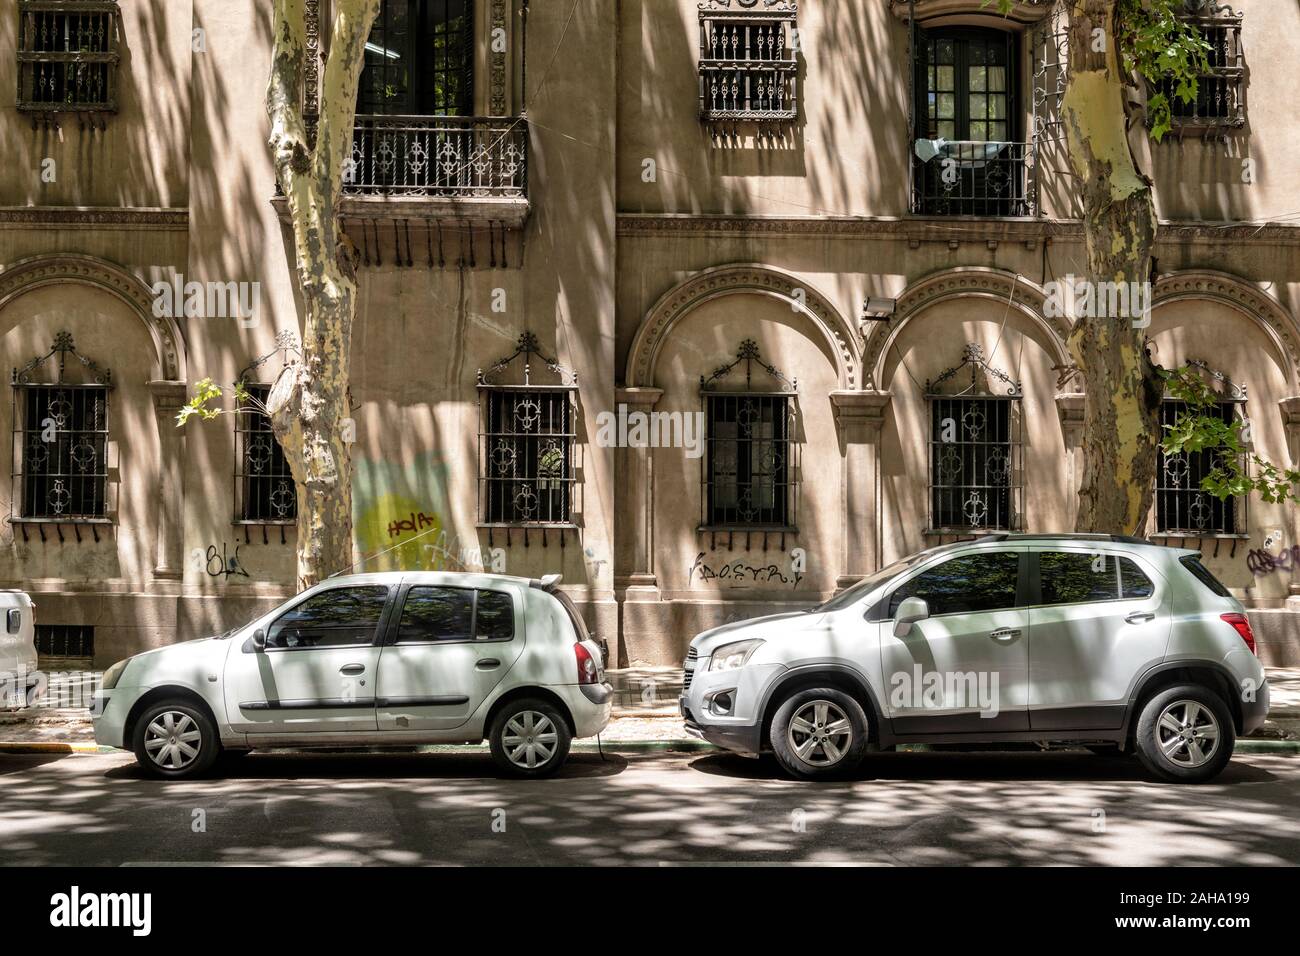 Une scène de rue, avec des véhicules en stationnement, dans la ville de Mendoza, Argentine. Banque D'Images